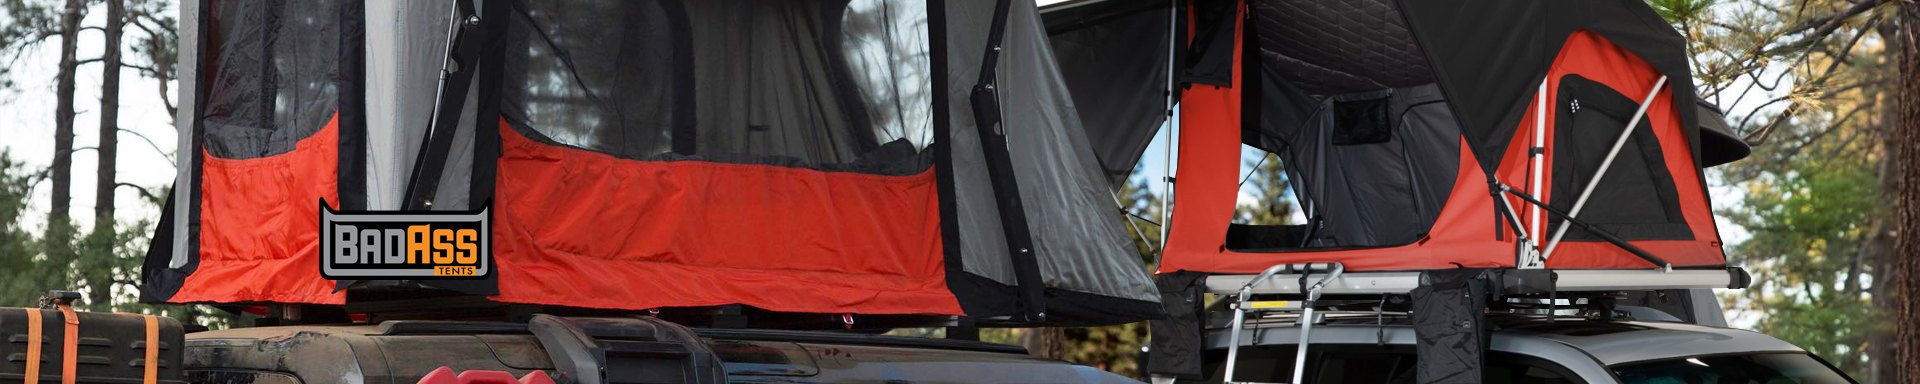 BadAss Tents Car Tents